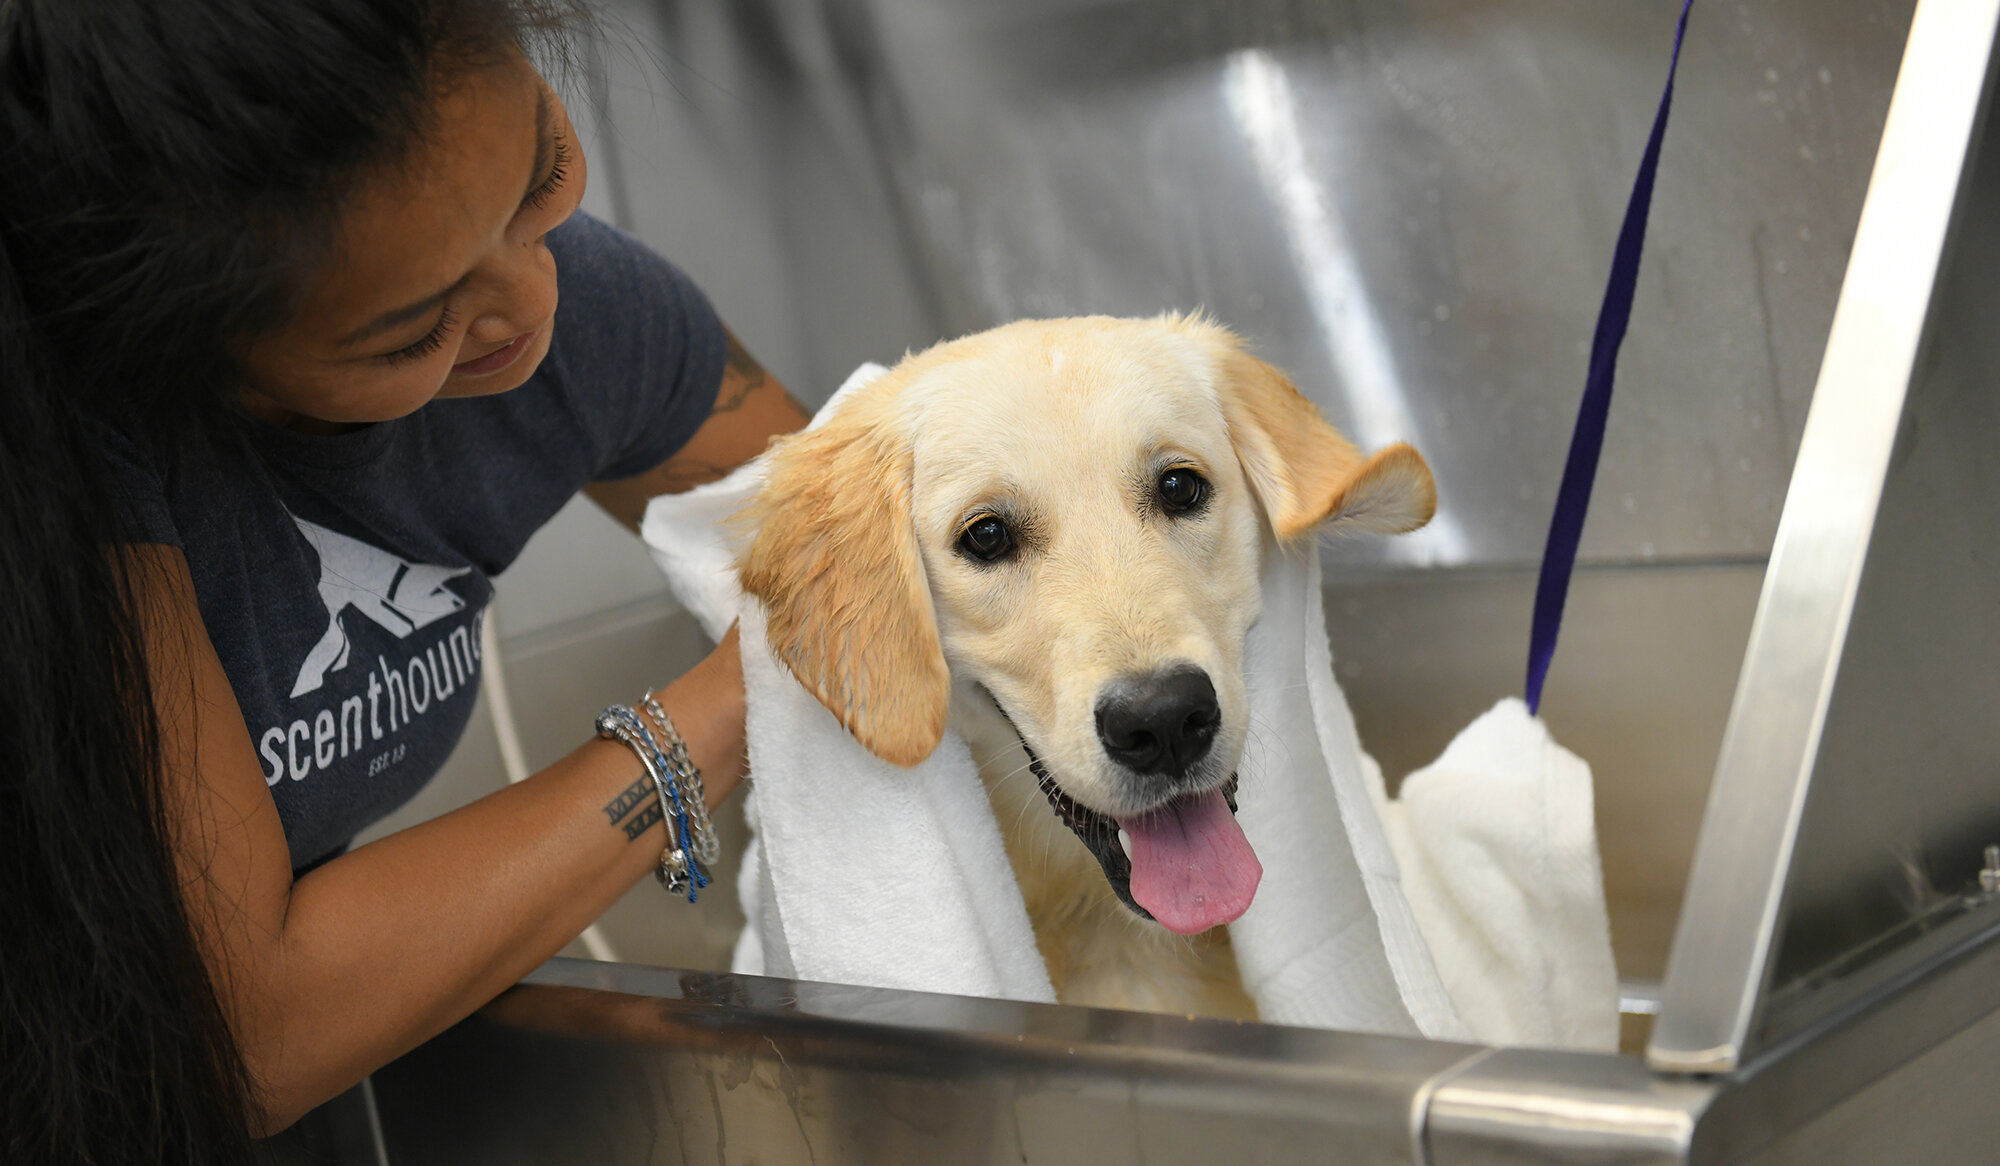 Dog Washing & Grooming Franchise | Scenthound Dog Franchise